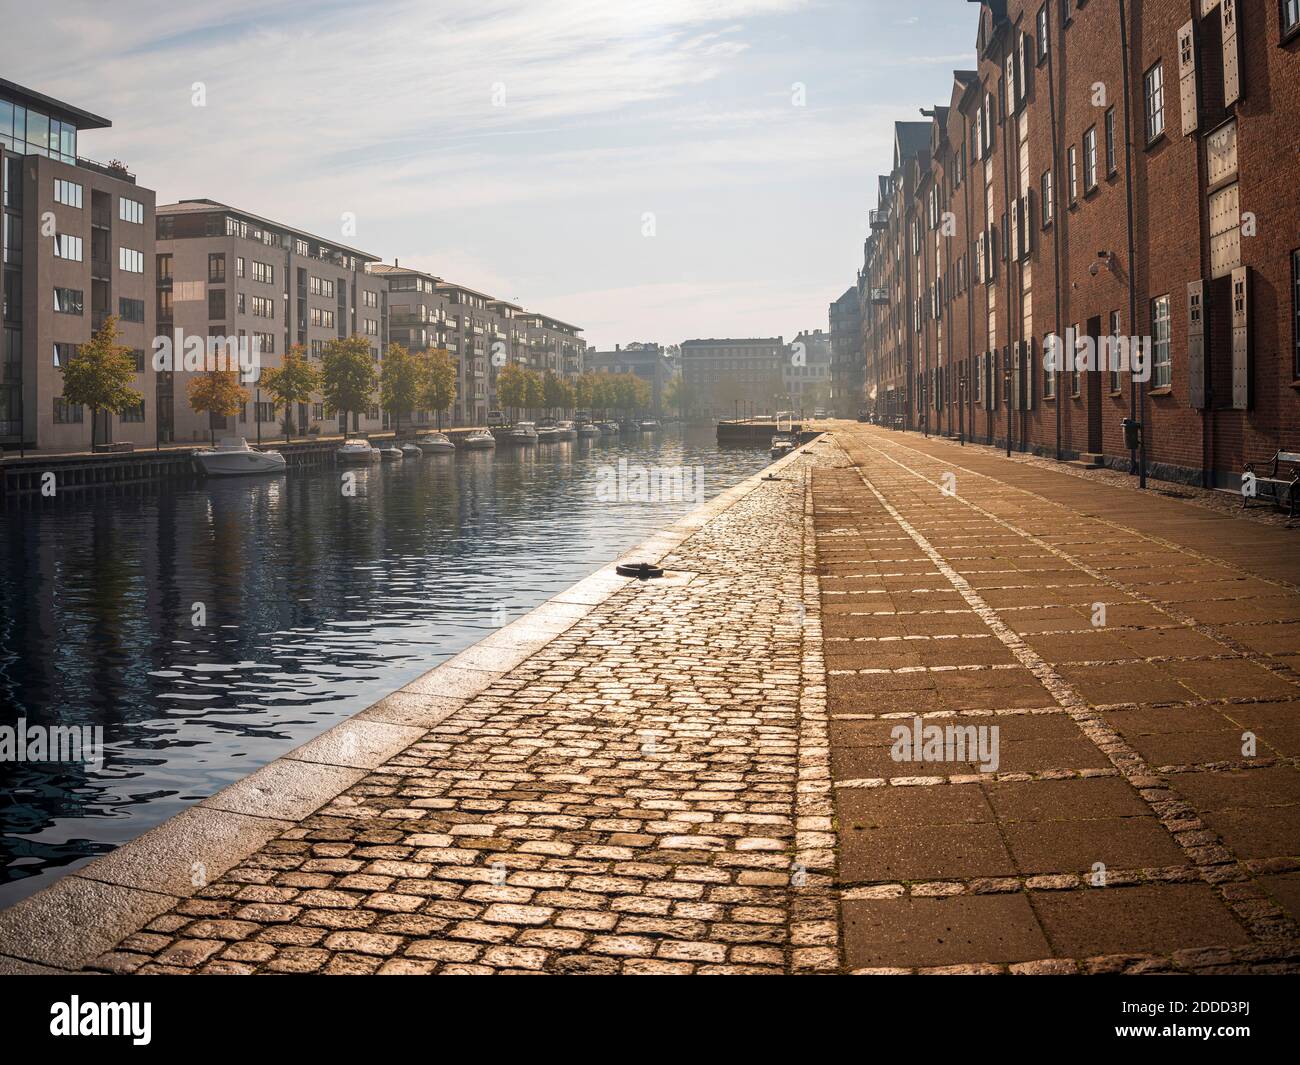 Denmark, Copenhagen, Rows of residential buildings along Christianshavn canal Stock Photo